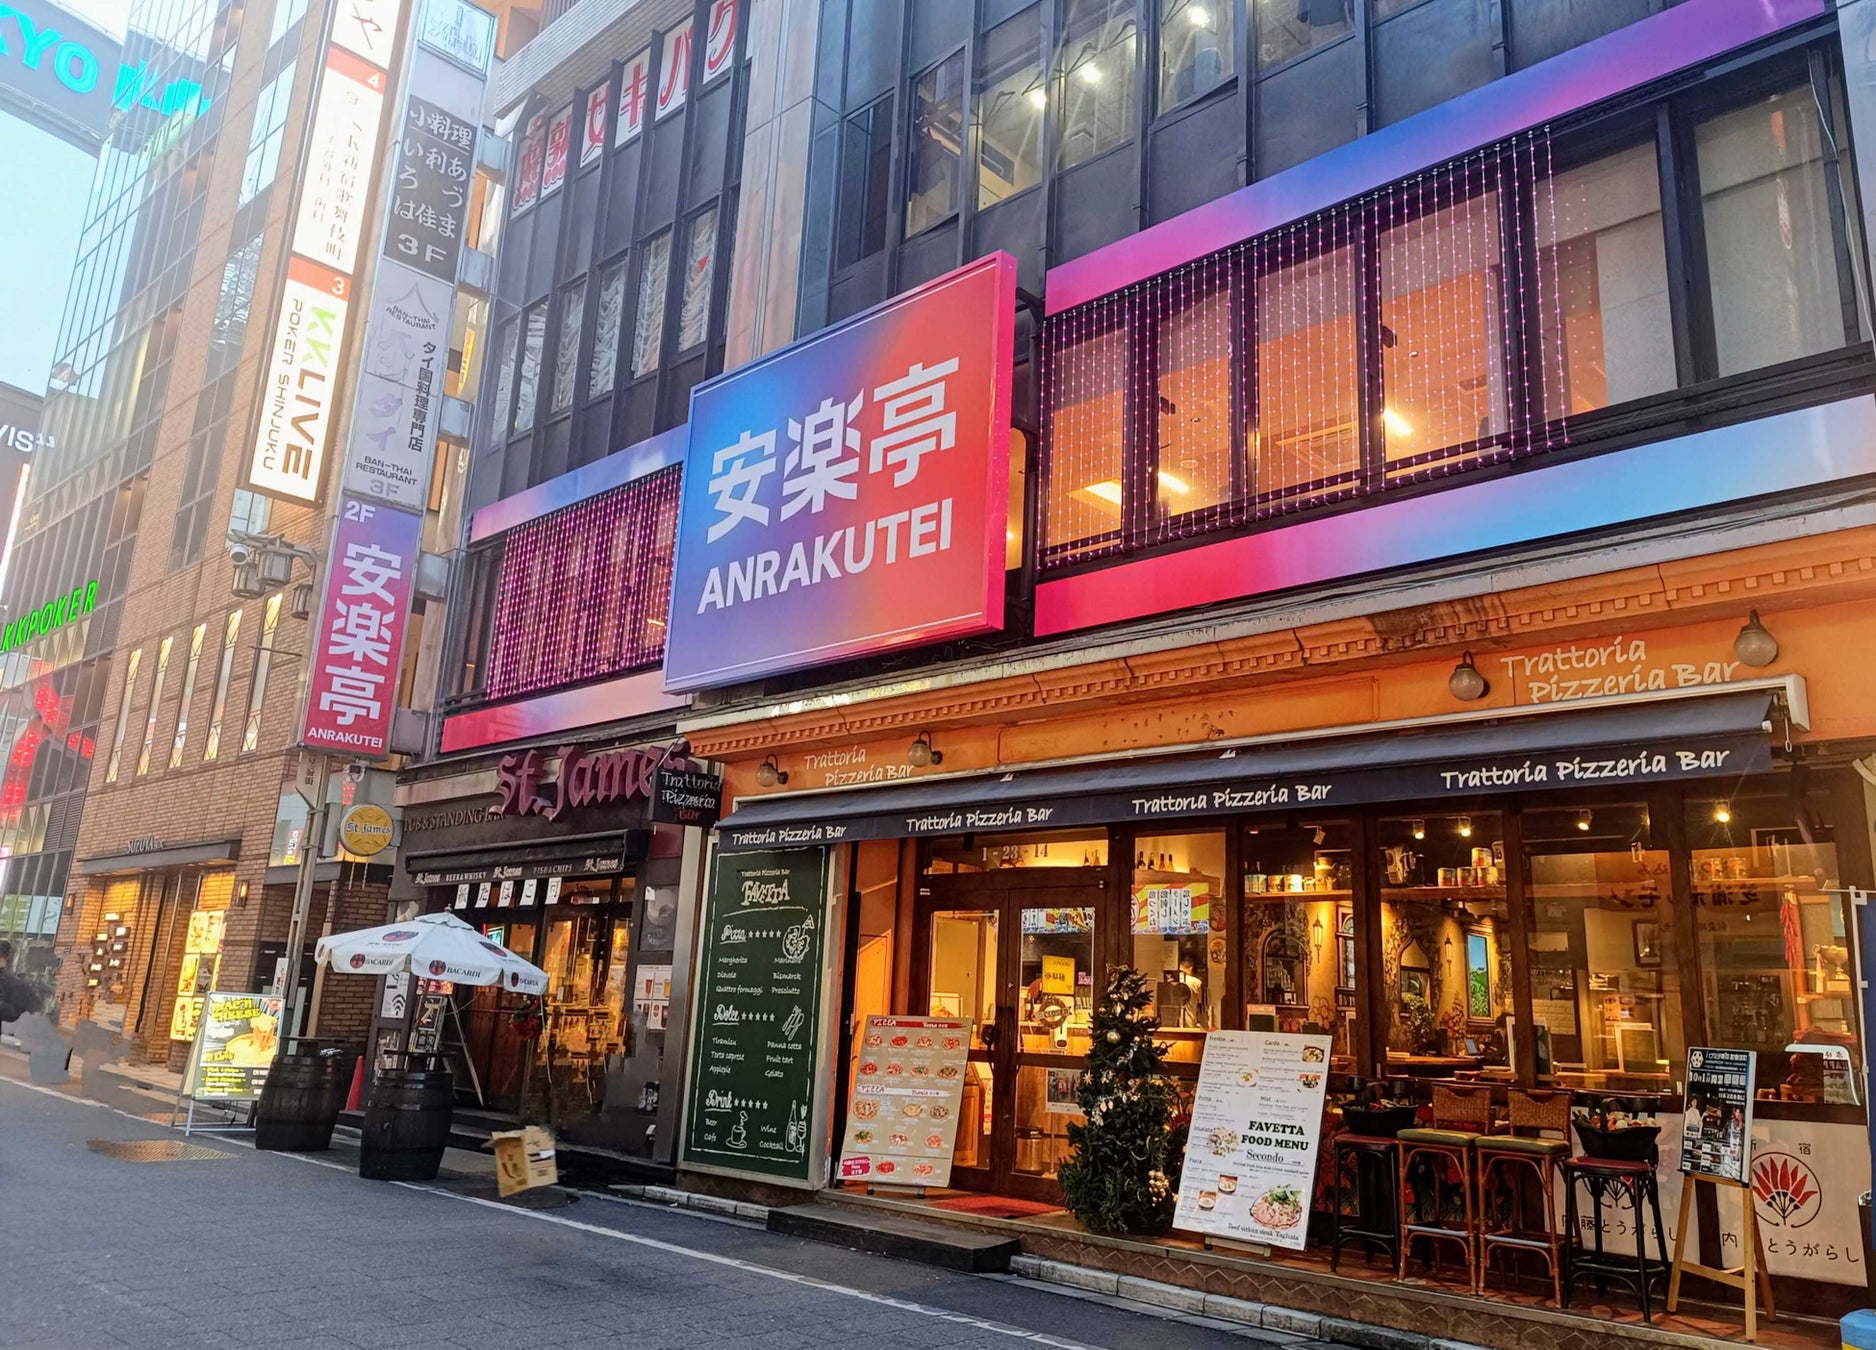 ポチャ（韓国屋台）料理とアルコールバー、そして焼肉！ポップでスタイリッシュな東京の新スポットに生まれ変わった、安楽亭 歌舞伎町店がついに12月15日（金）オープン！